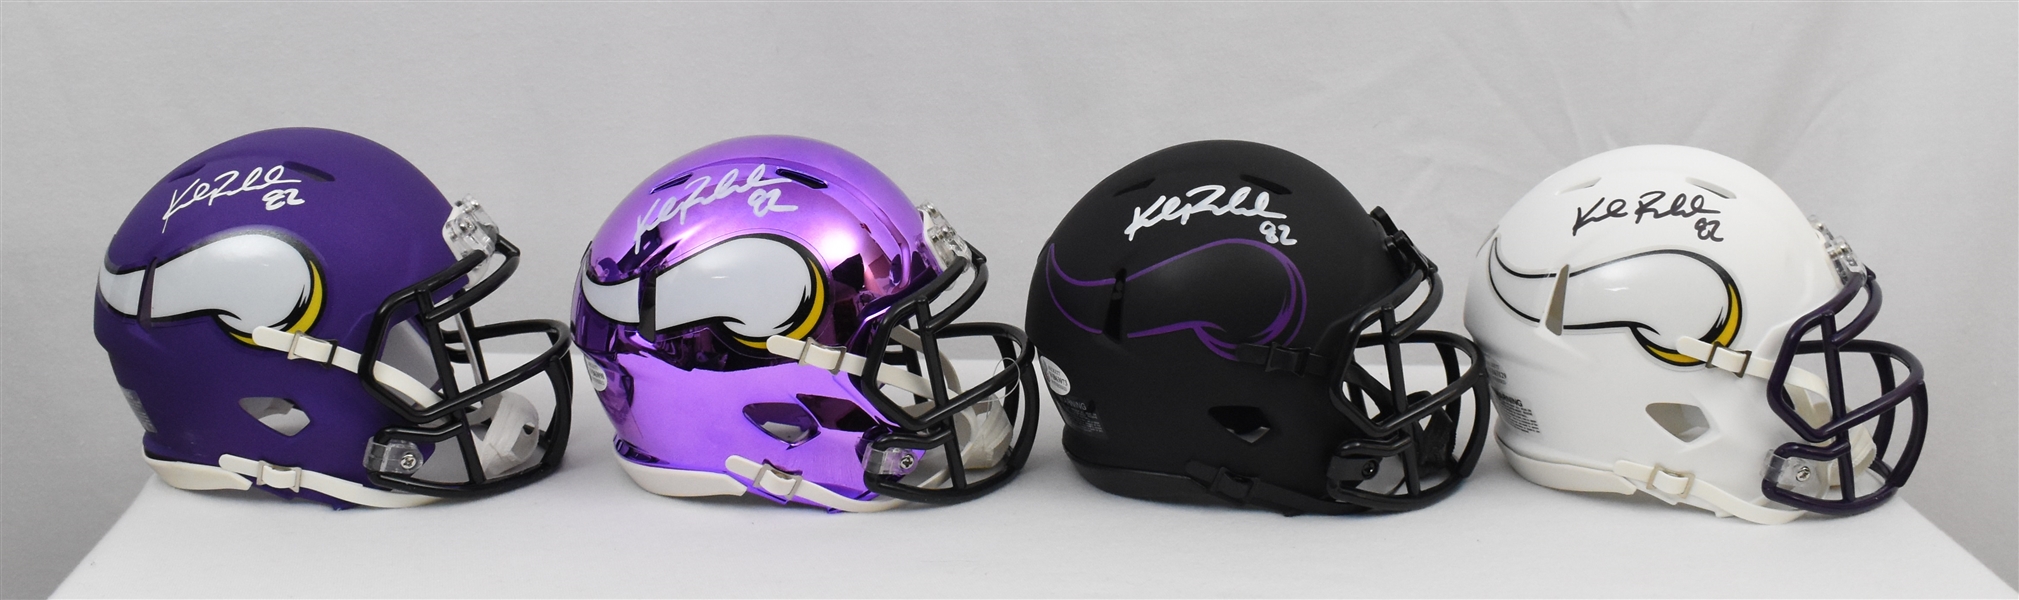 Kyle Rudolph Minnesota Vikings Lot of 4 Autographed Mini Helmets